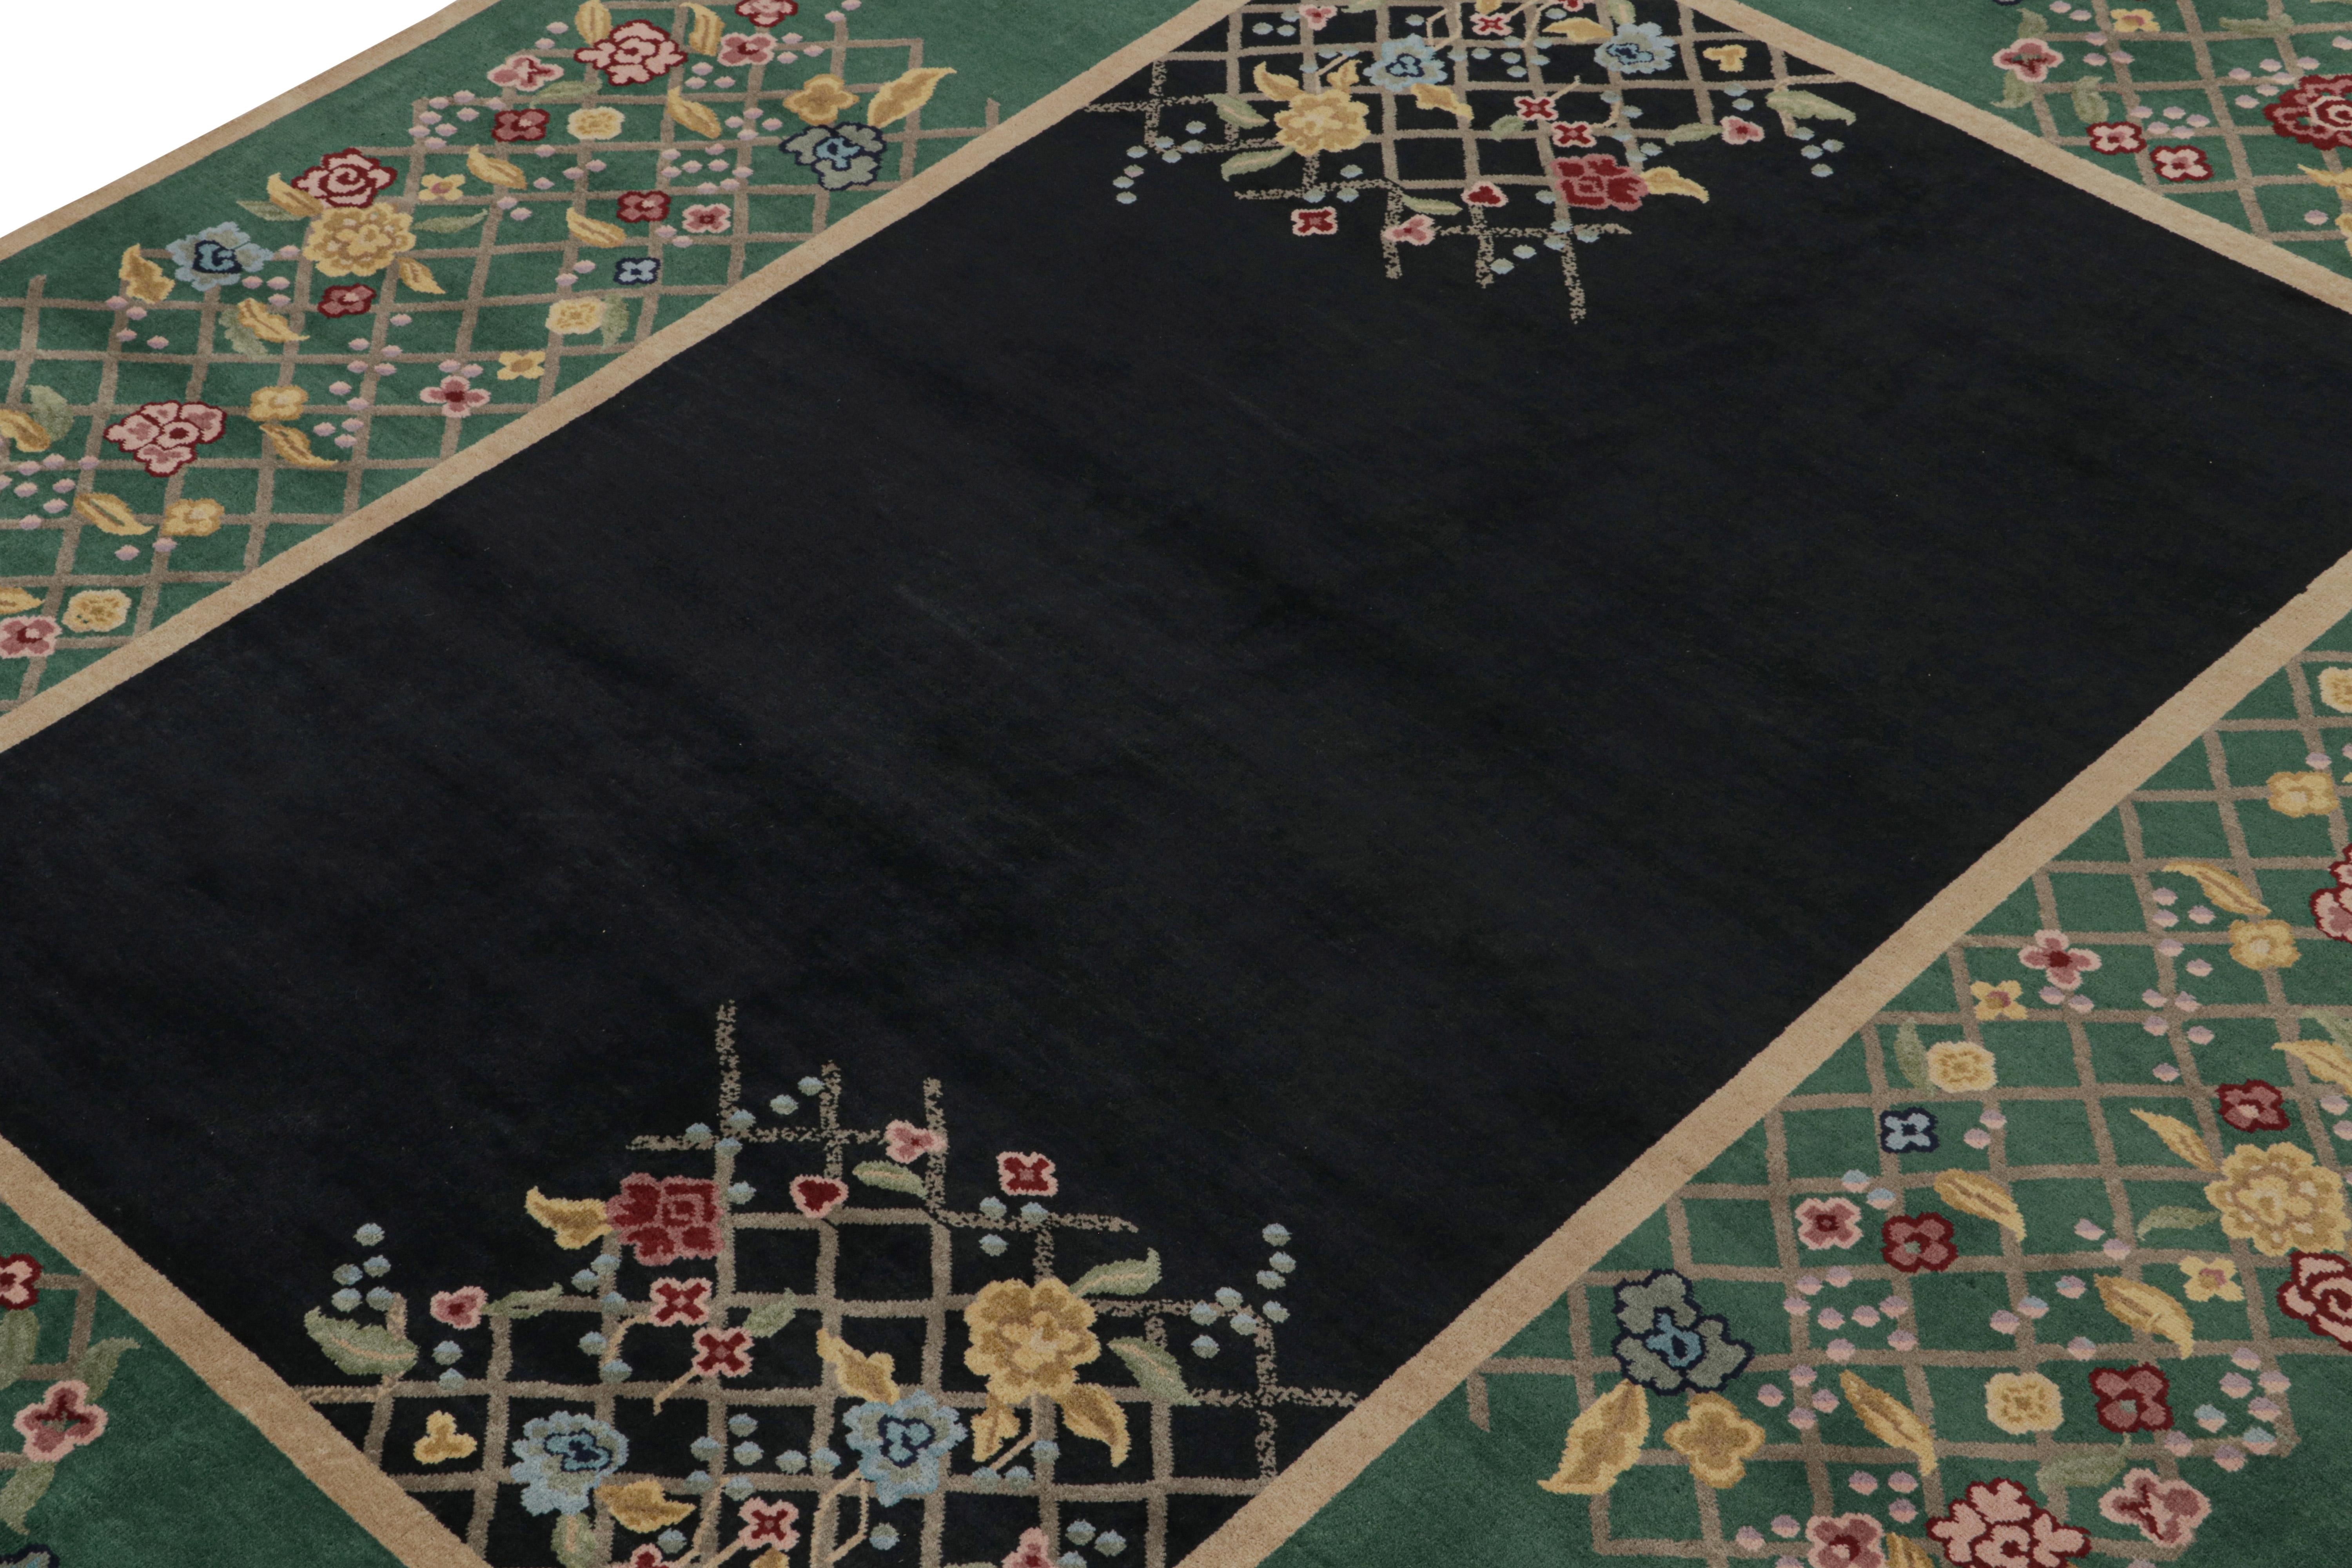 Dieser 9x11 große Teppich ist eine aufregende Neuheit in der zeitgenössischen Art-Deco-Teppichkollektion von Rug & Kilim.

Über das Design: 

Dieser handgeknüpfte Wollteppich ist vom chinesischen Art-Déco-Stil der 1920er Jahre inspiriert. Das Design